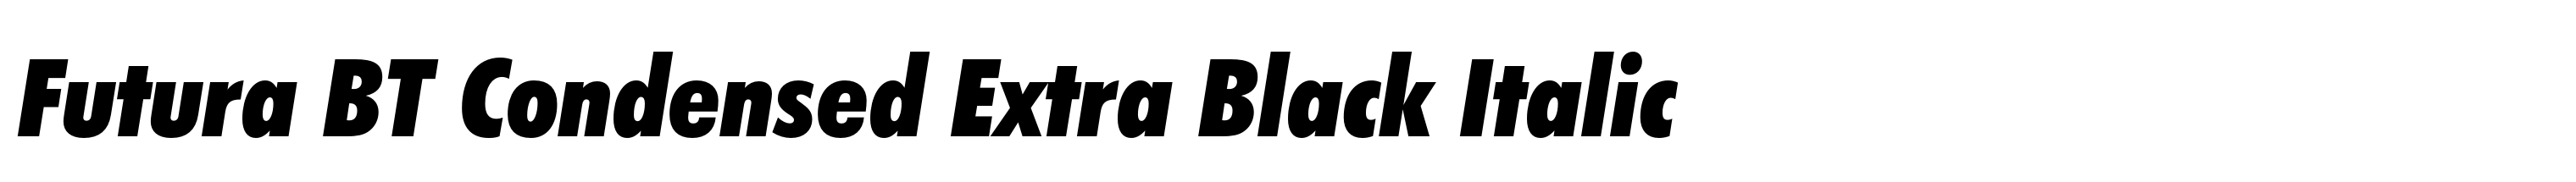 Futura BT Condensed Extra Black Italic